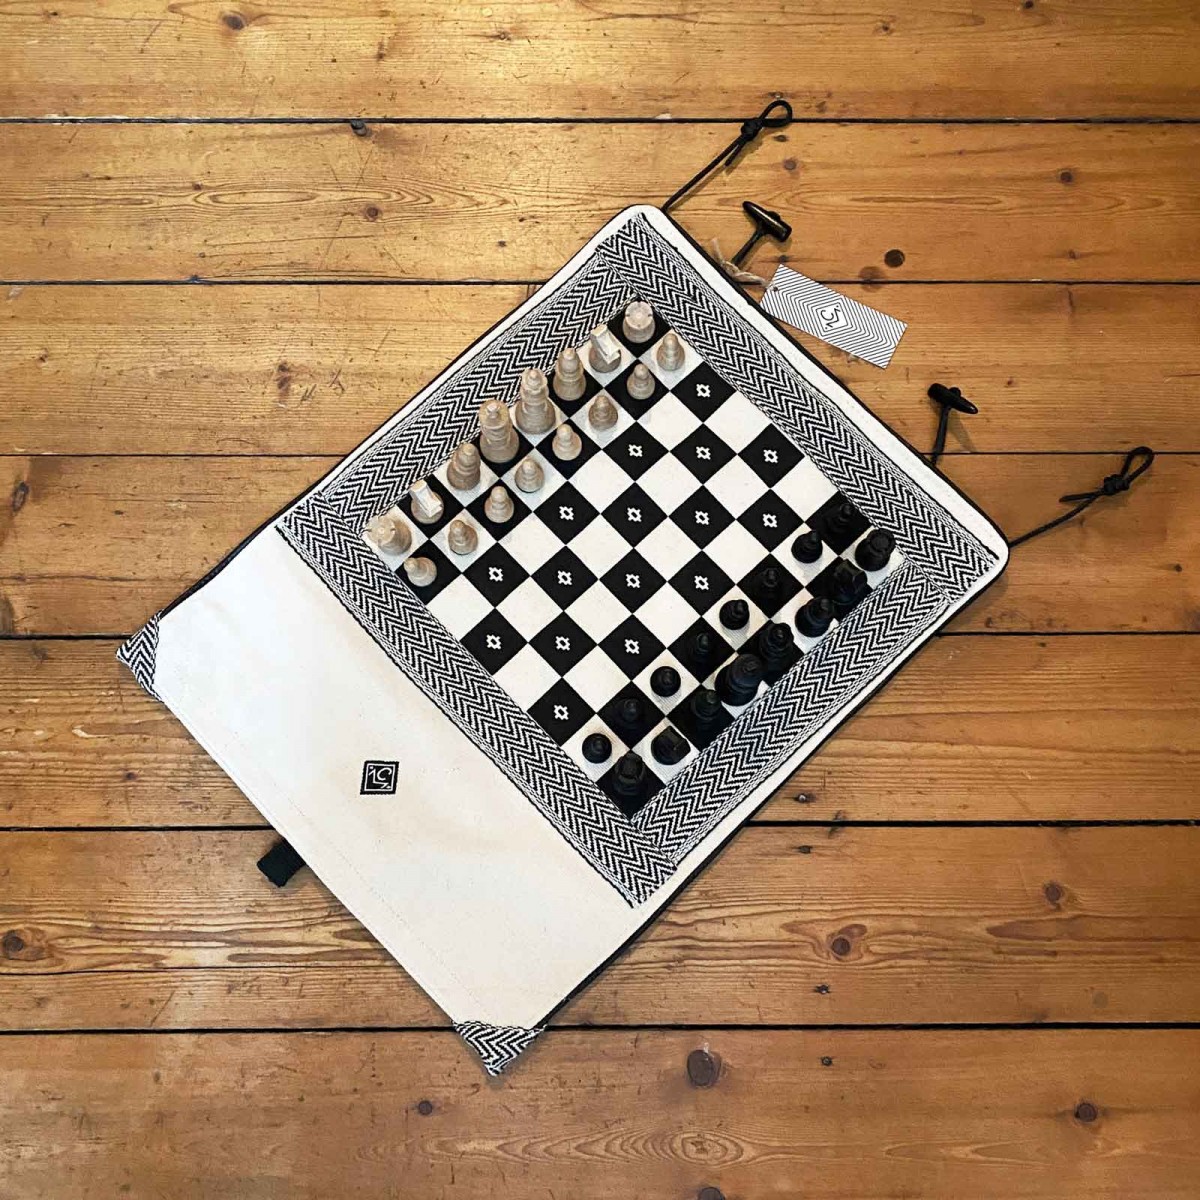 Chezz Matazz - portables Schachspiel aus festem Baumwoll Canvas zum Einrollen und Mitnehmen mit integrierter Tasche 